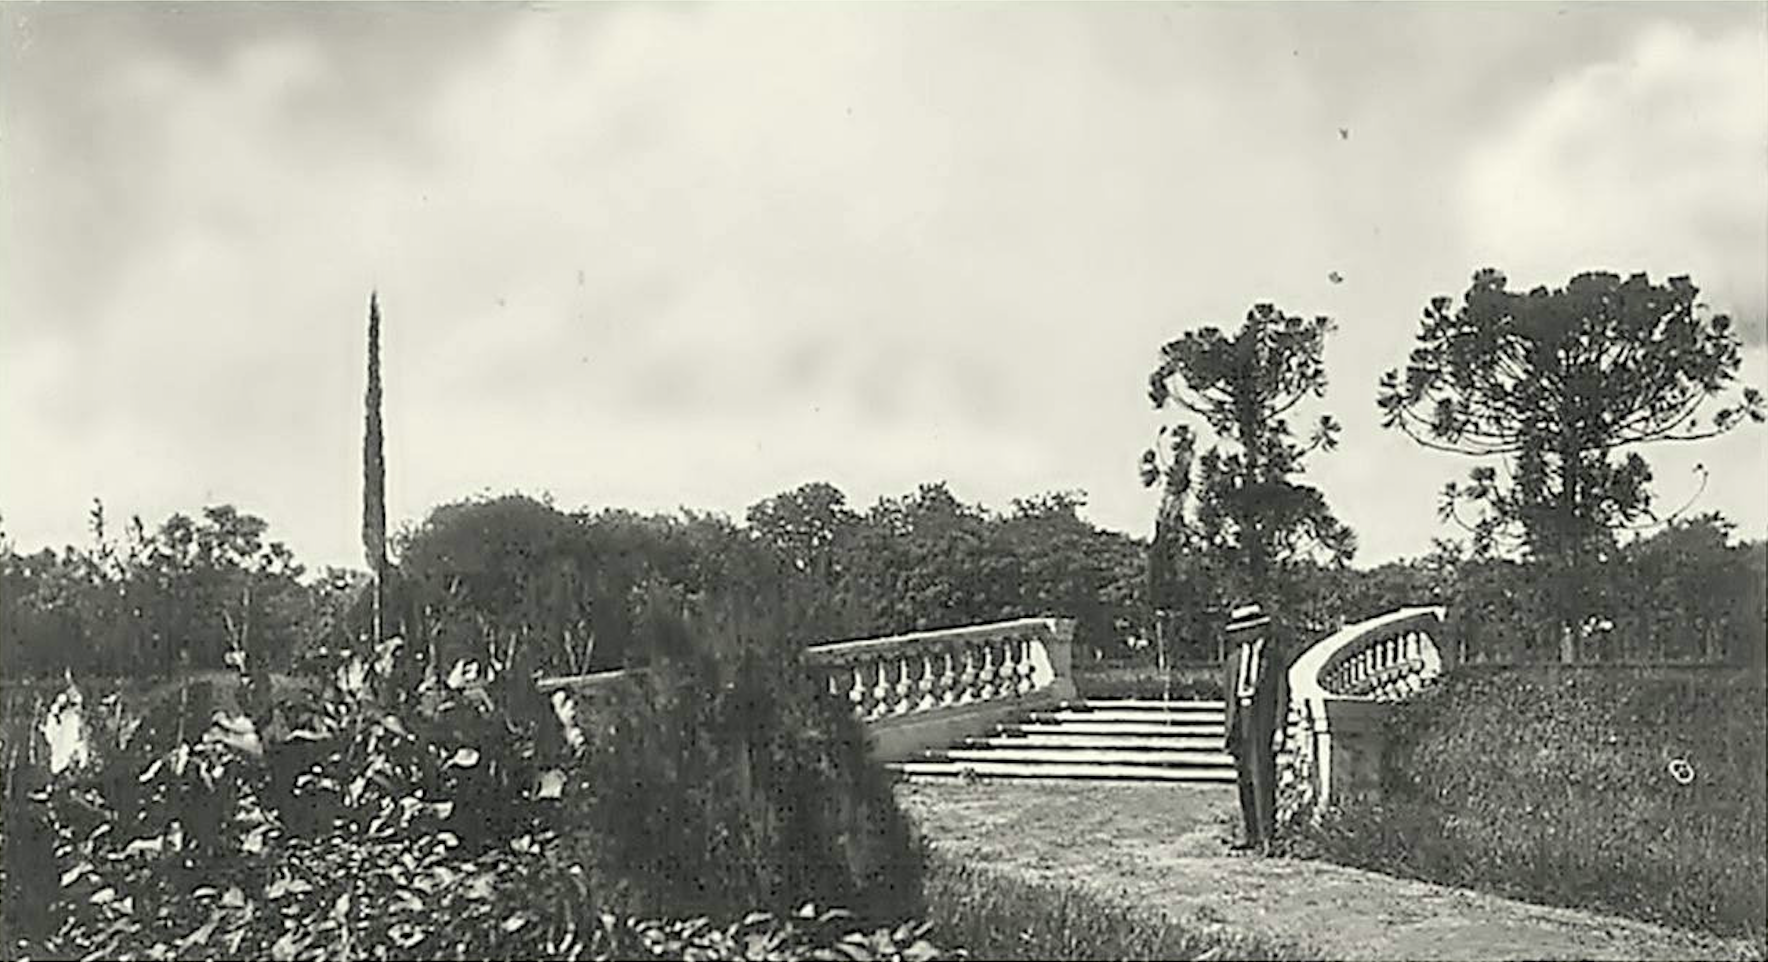 Jardín circular y escalinata de la plazoleta oval, ca. 1920. Cortesía